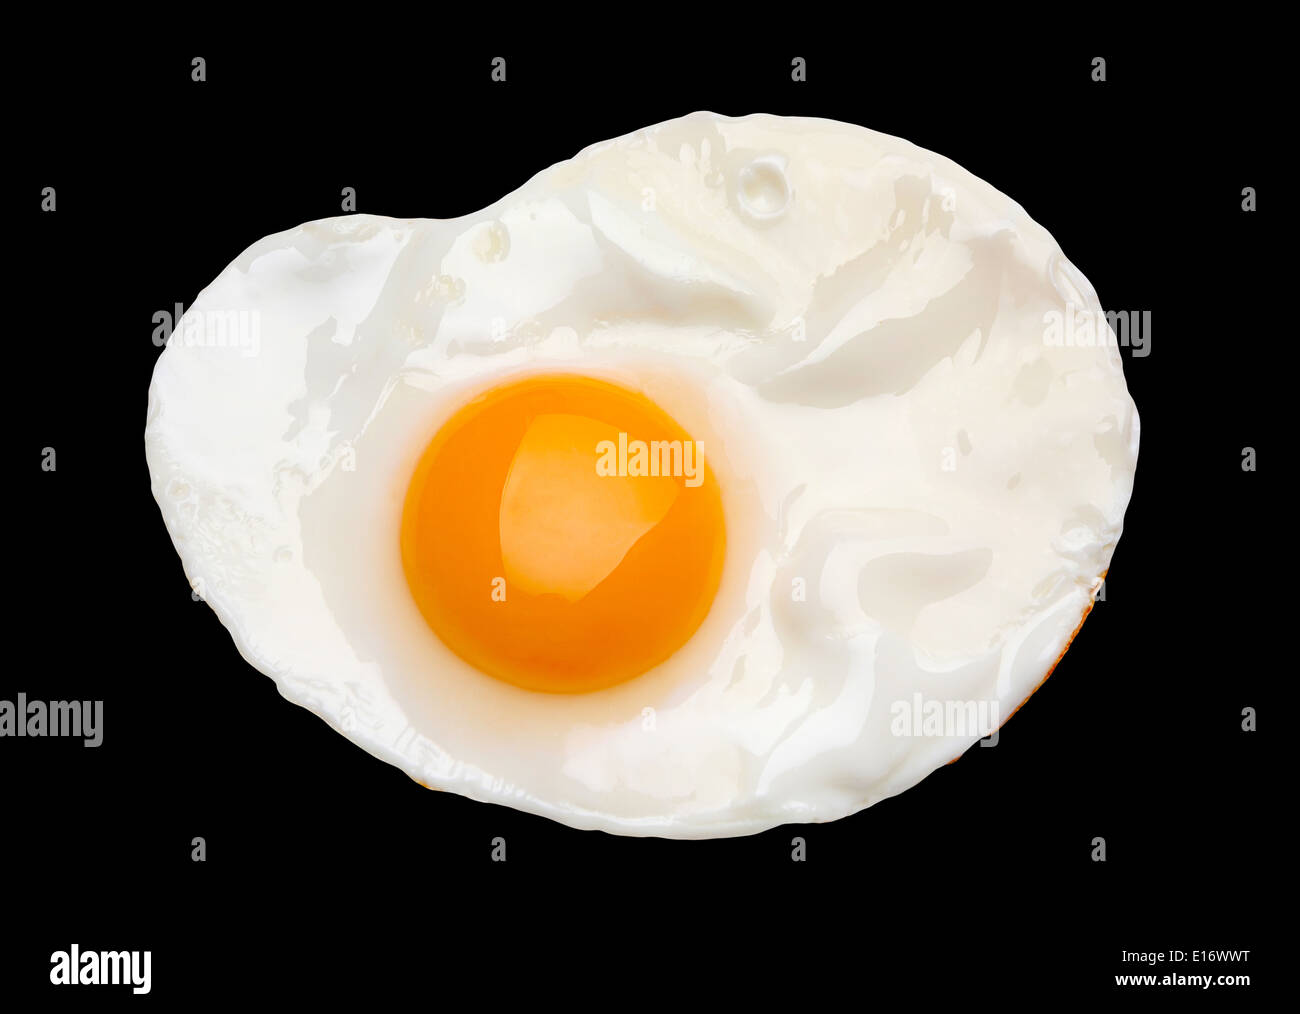 Fried egg isolated on black background Stock Photo